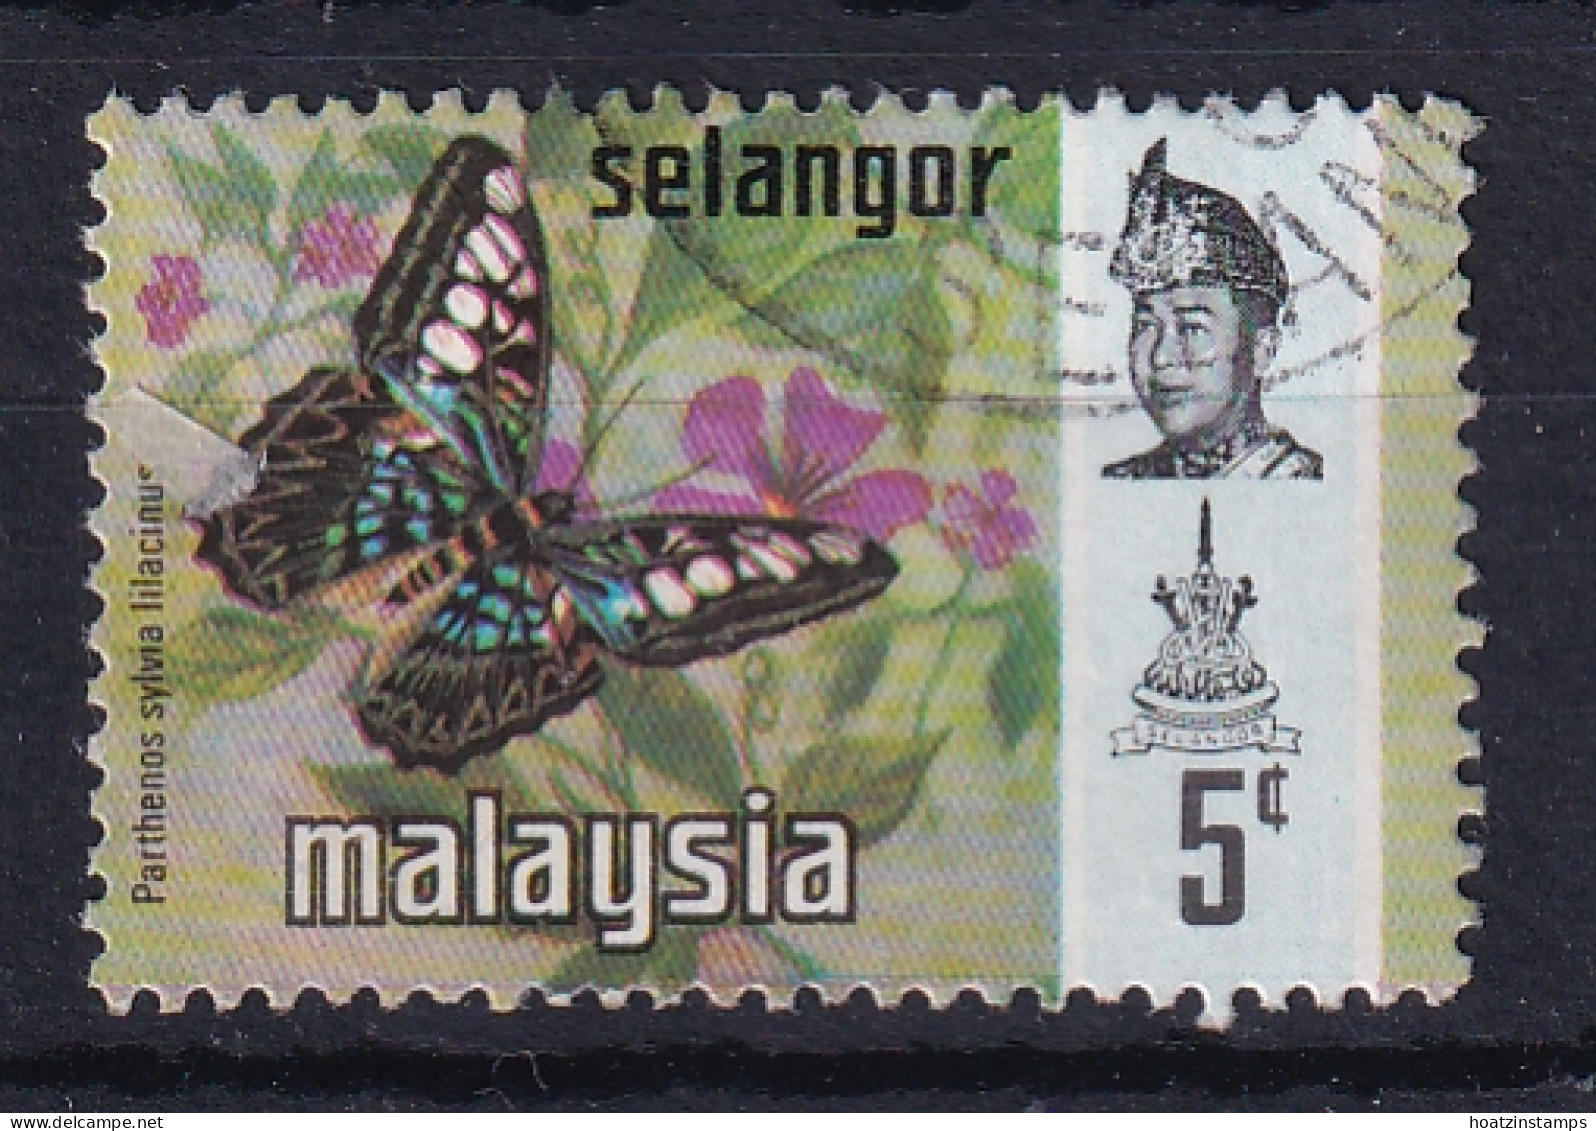 Malaya - Selangor: 1971/78   Butterflies   SG148    5c   [Litho]   Used - Selangor